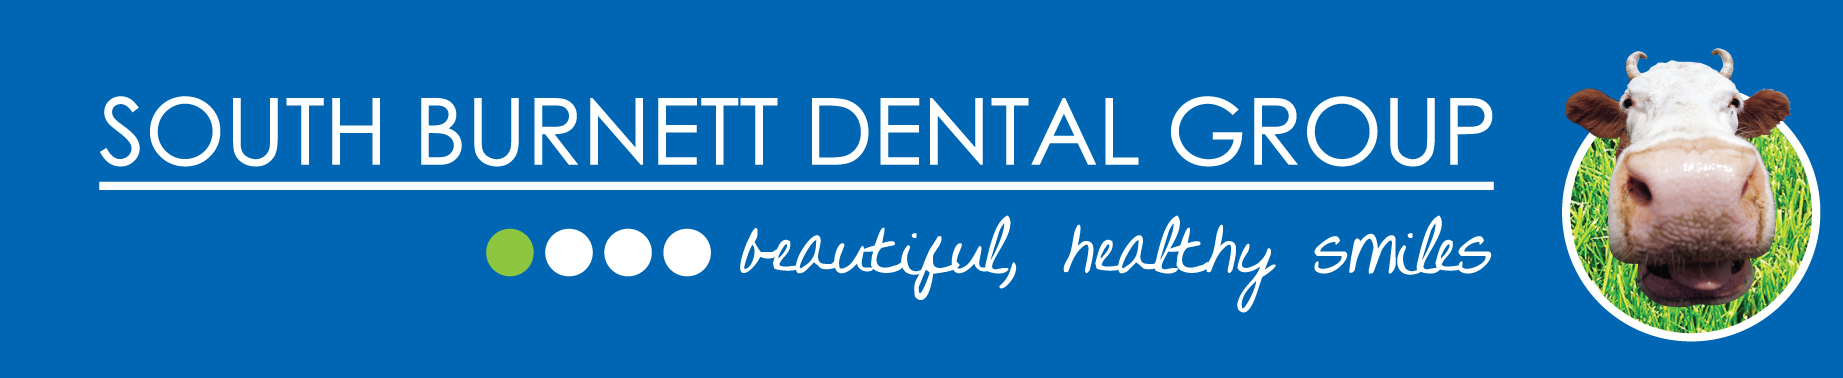 South-Burnett-Dental-Group.jpg